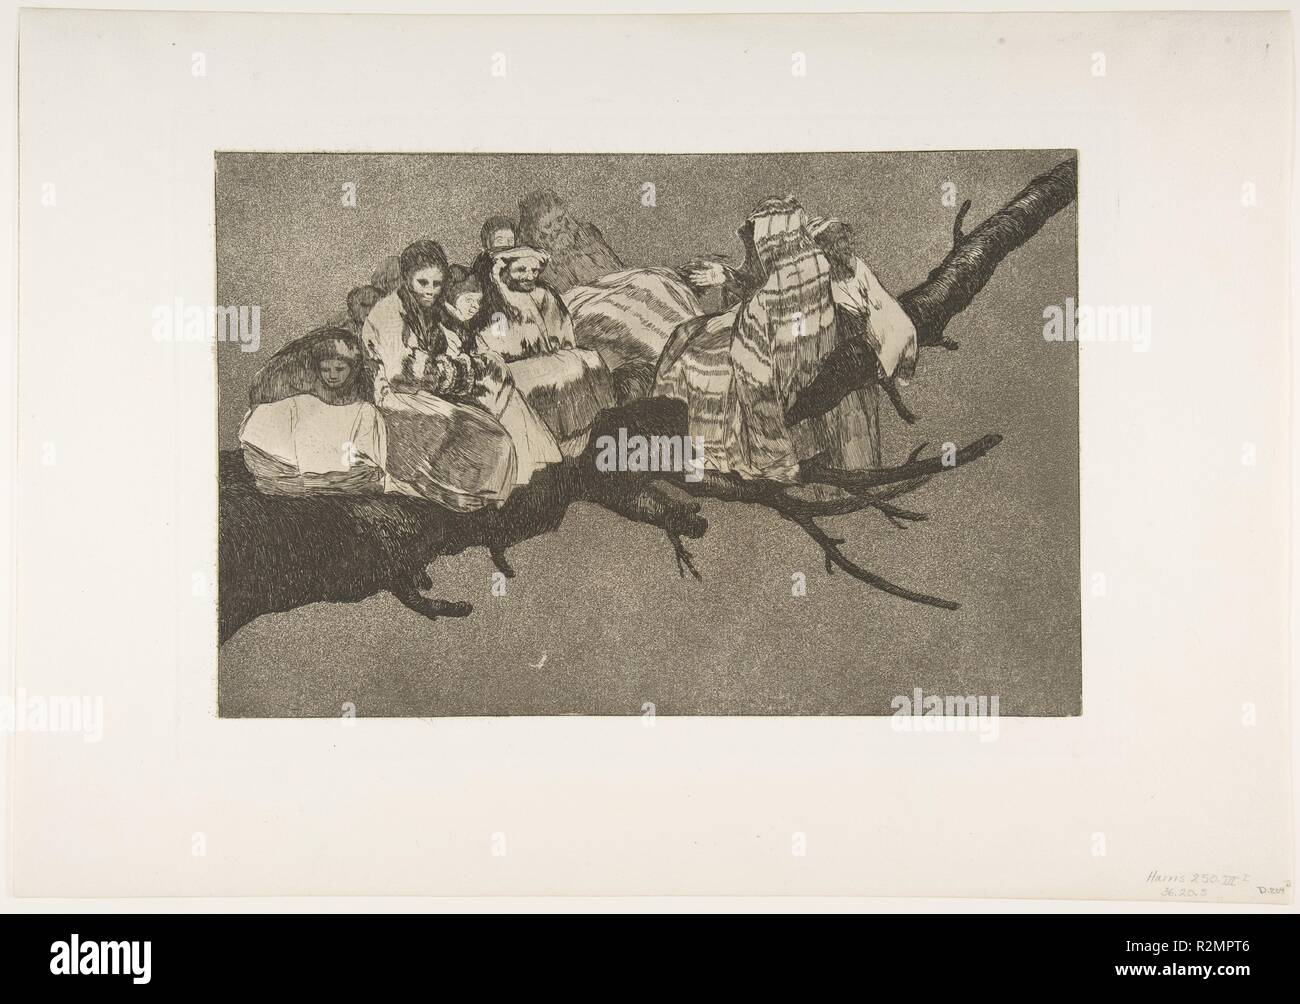 La piastra 3 dalla 'Disparates': ridicolo follia. Artista: Goya (Francisco de Goya y Lucientes) (Spagnolo, 1746-1828 Fuendetodos Bordeaux). Dimensioni: Piastra: 9 7/16 × 13 3/4 in. (24 × 35 cm) foglio: 13 a. × 18 11/16 in. (33 × 47,5 cm). Serie/Portfolio: Los Disparates (Los Proverbios). Data: ca. 1816-23 (pubblicata nel 1864). Da postumo prima edizione pubblicata dall Academia de San Fernando a Madrid nel 1864 sotto il titolo "Los Proverbios'. Museo: Metropolitan Museum of Art di New York, Stati Uniti d'America. Foto Stock